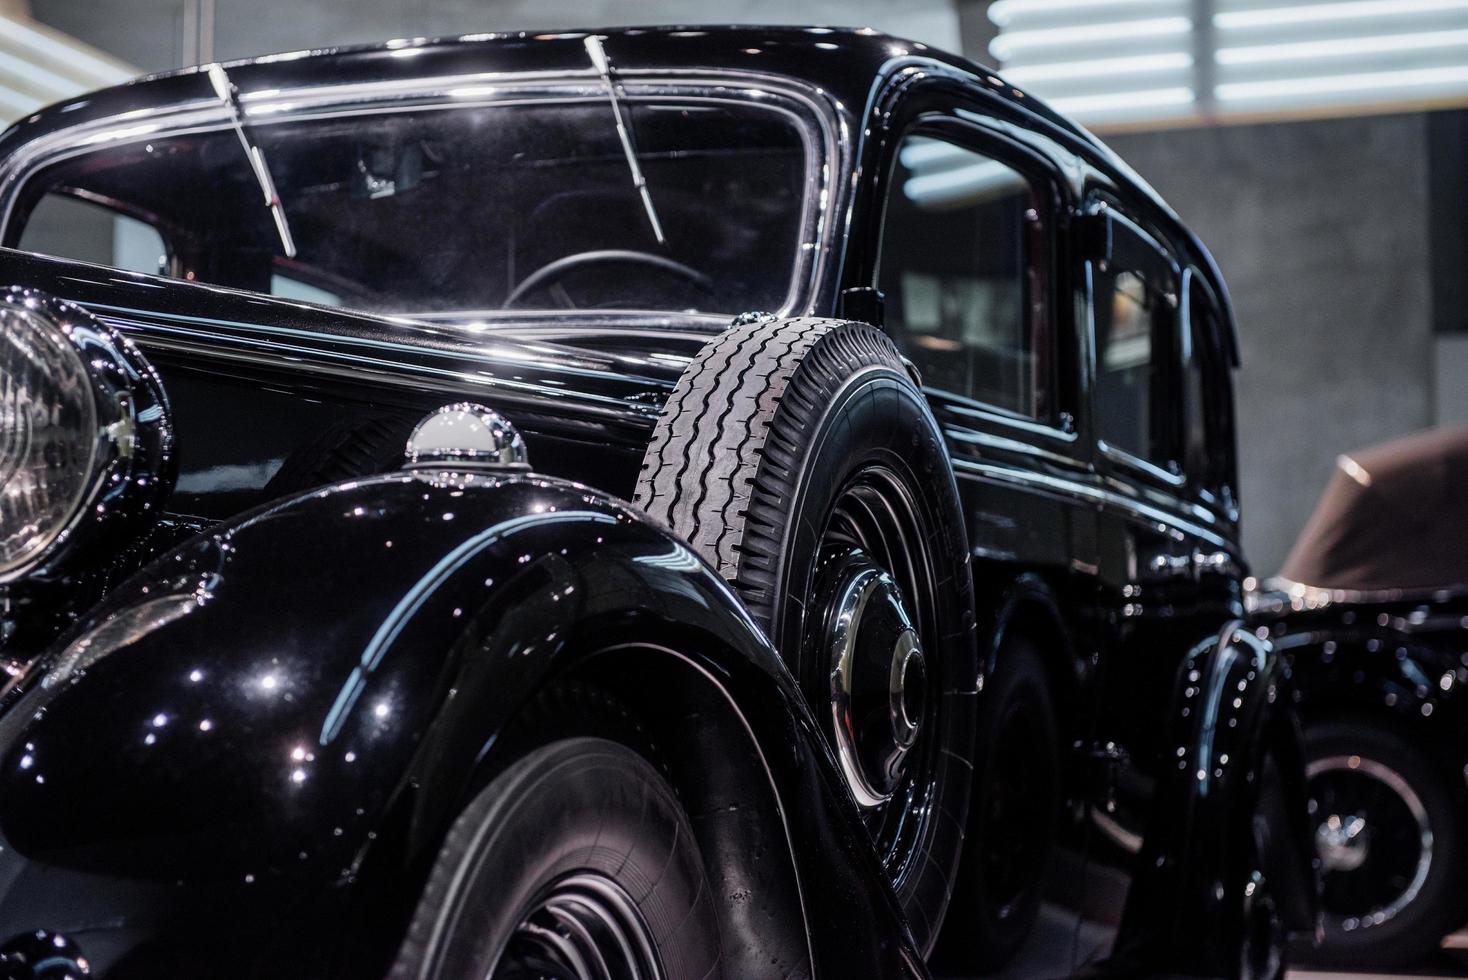 zwarte antieke glanzende auto met reservewiel aan de zijkant foto